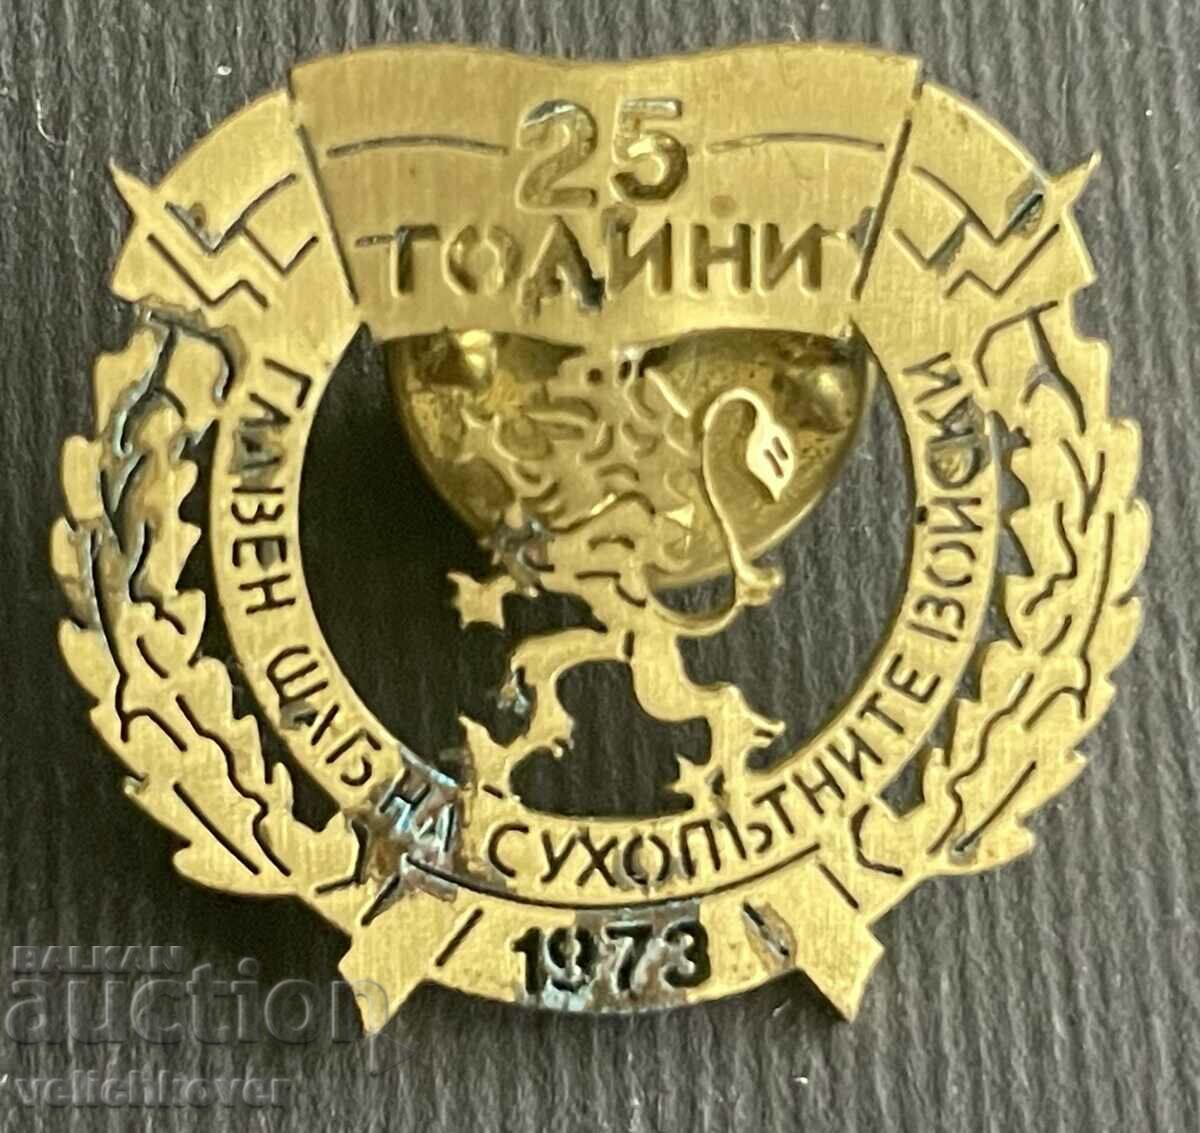 35786 Βουλγαρία μετάλλιο 25 ετών Αρχηγείο χερσαίων δυνάμεων